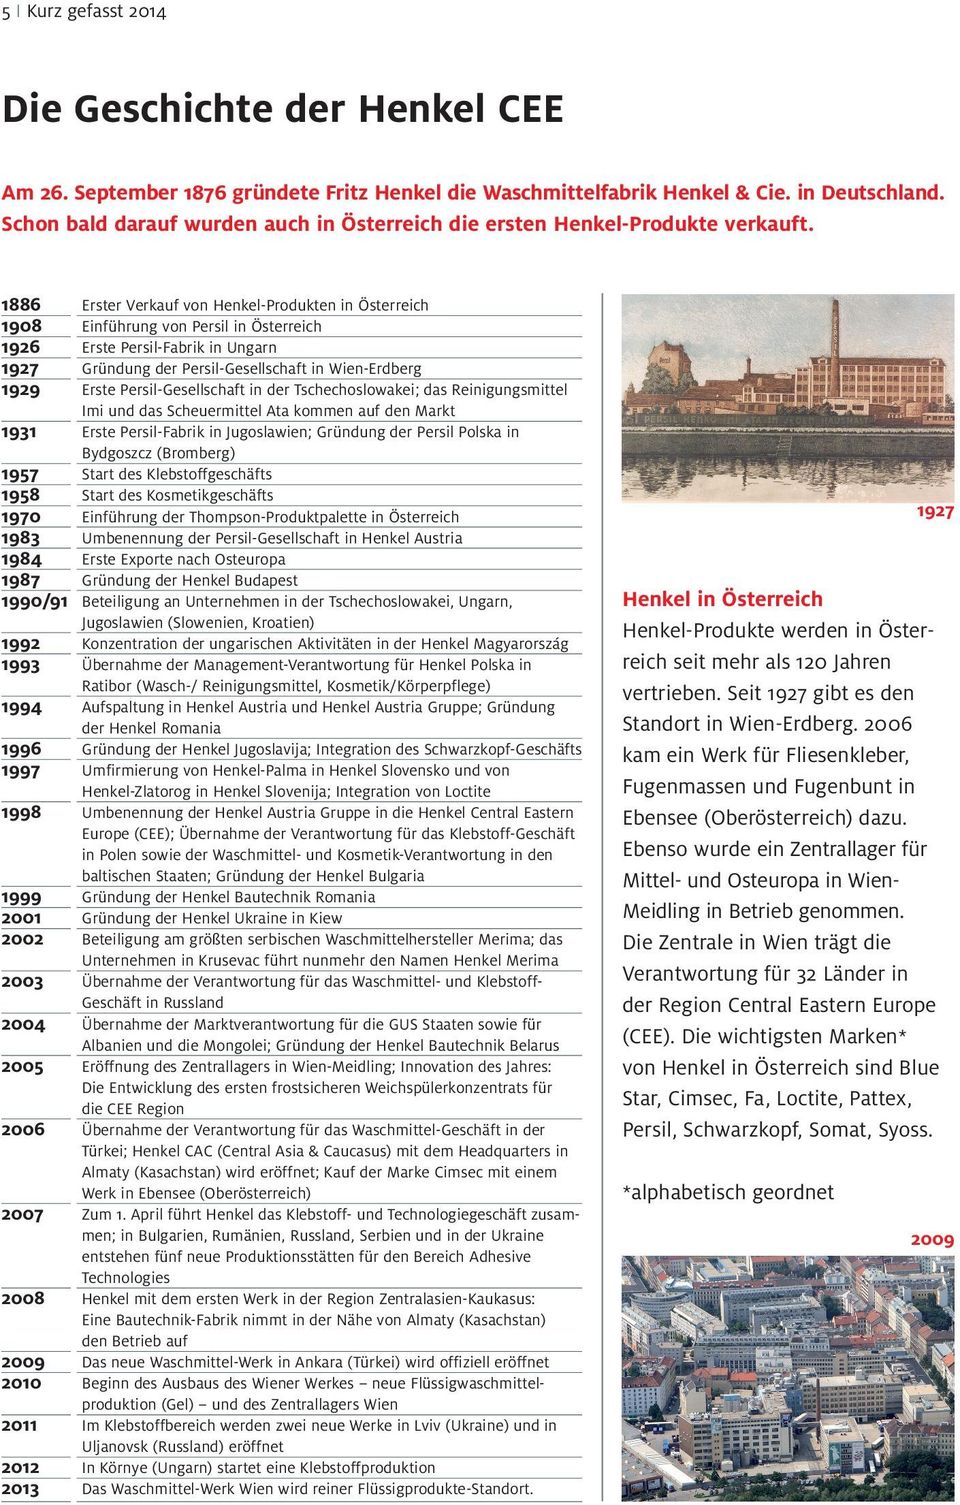 1886 Erster Verkauf von Henkel-Produkten in Österreich 1908 Einführung von Persil in Österreich 1926 Erste Persil-Fabrik in Ungarn 1927 Gründung der Persil-Gesellschaft in Wien-Erdberg 1929 Erste